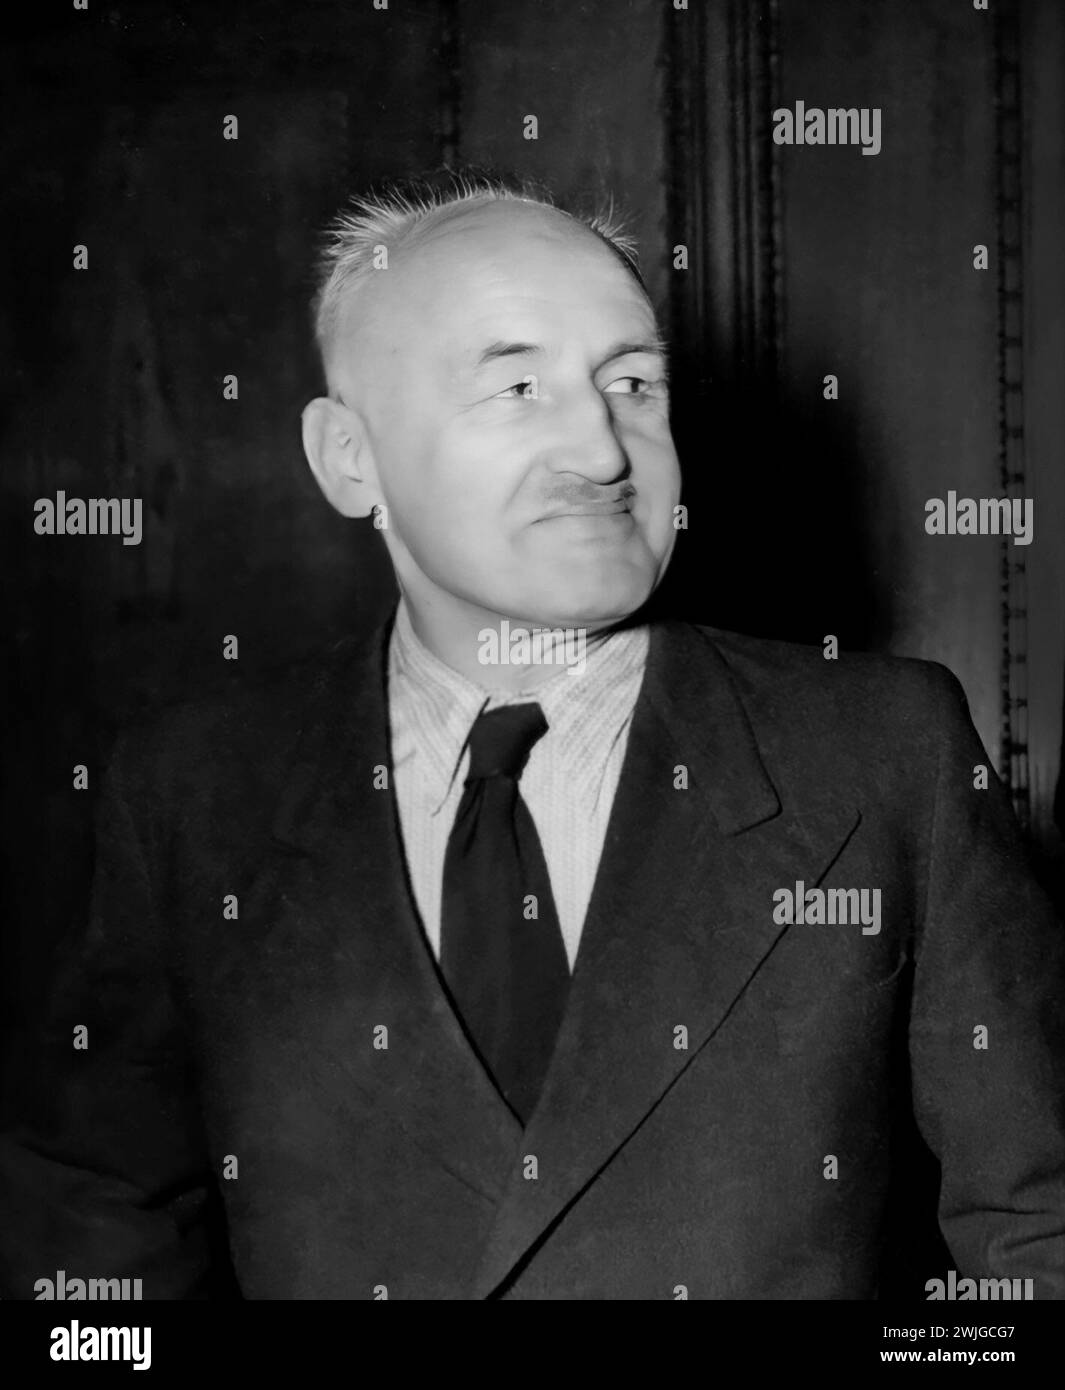 Julius Streicher. Portrait of the Nazi leader, Julius Streicher (1885-1946) at the Nuremberg War Crimes Trials, 1946 Stock Photo